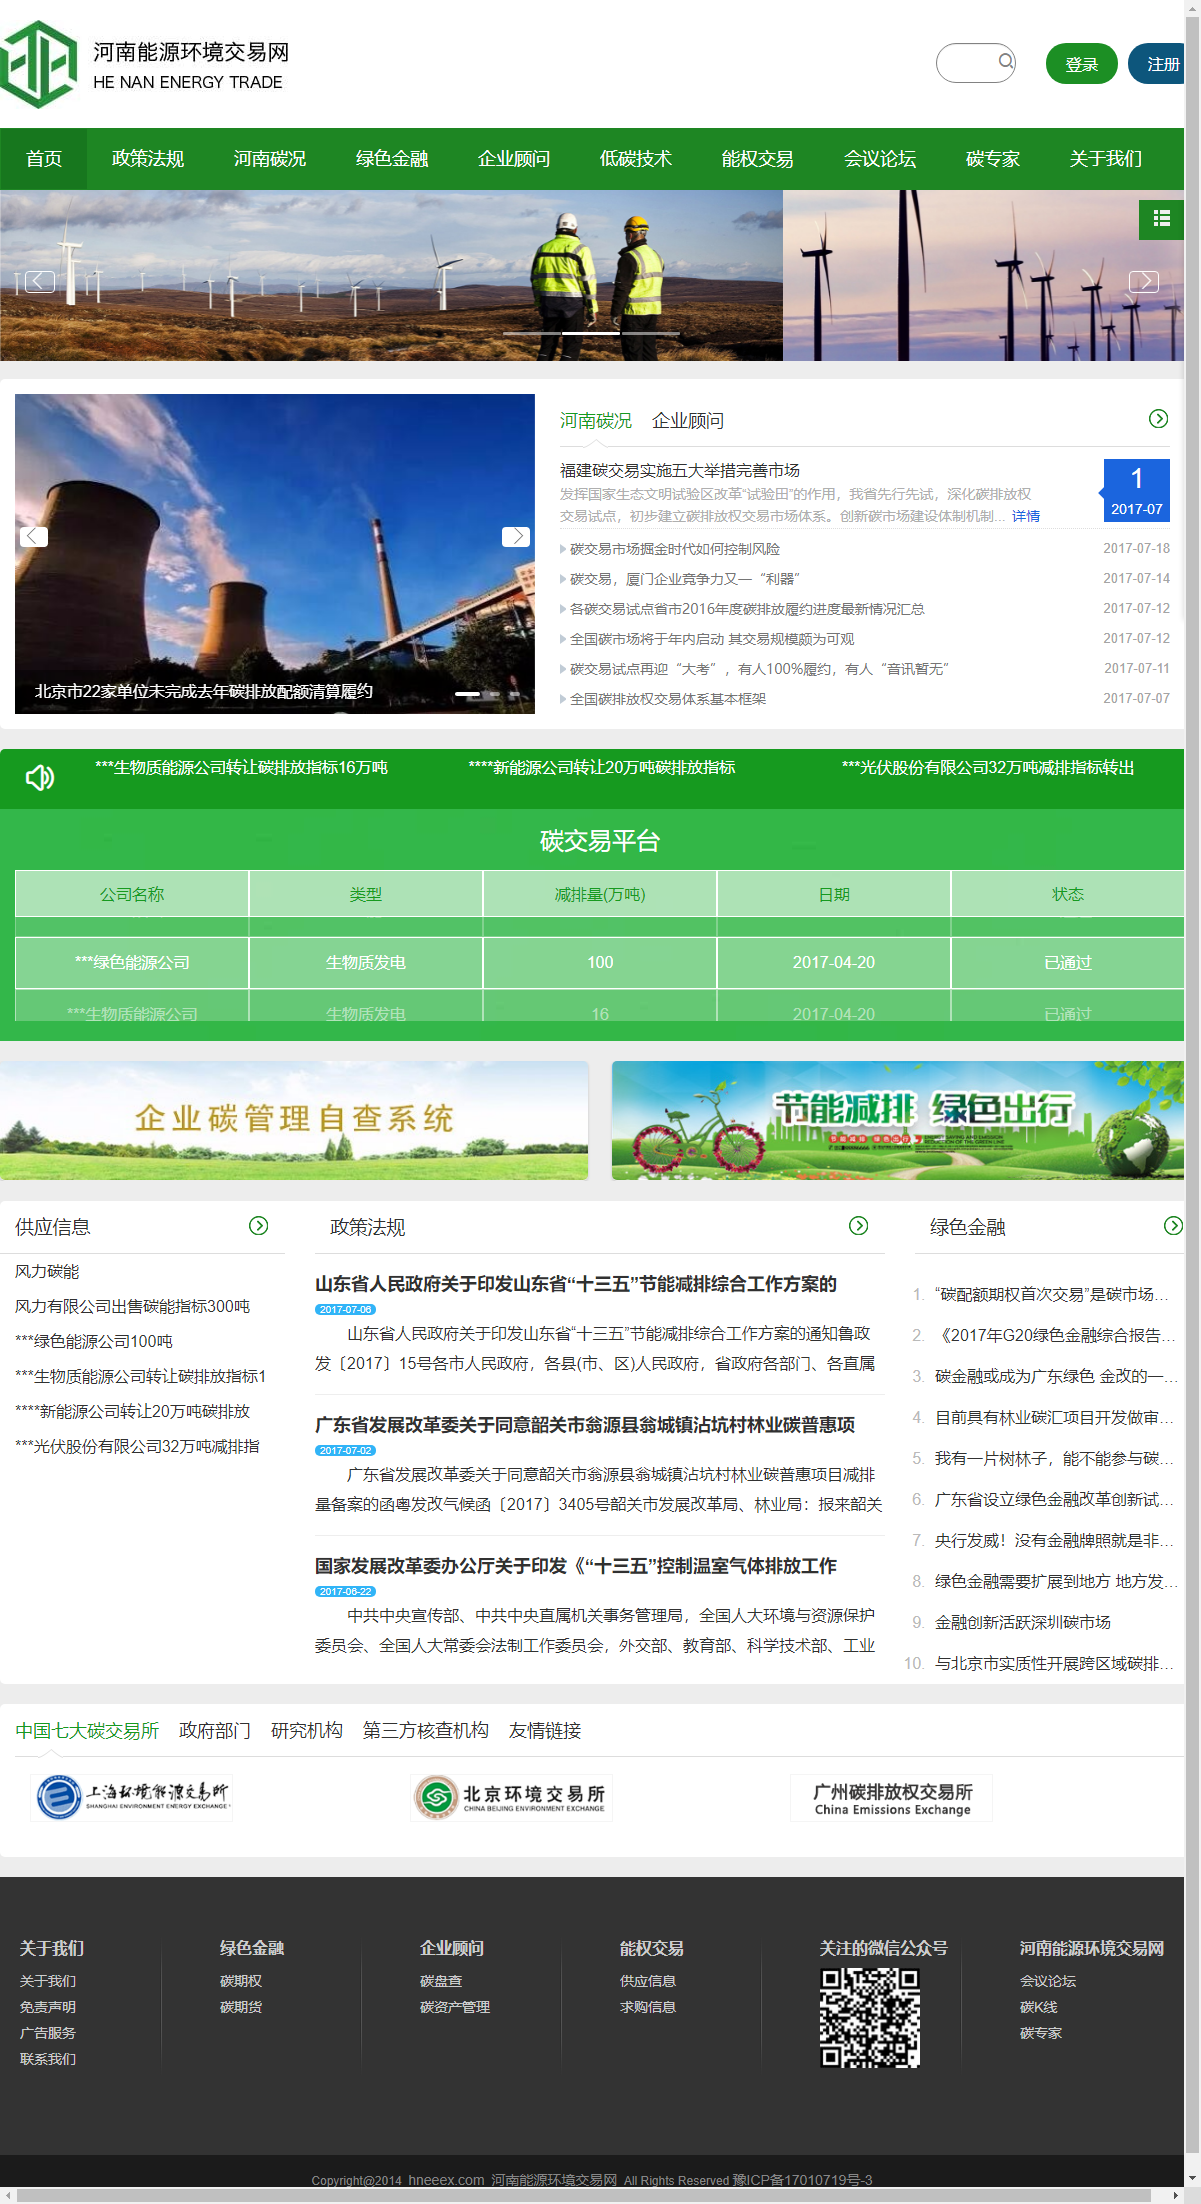 河南德能环保科技有限公司网站案例